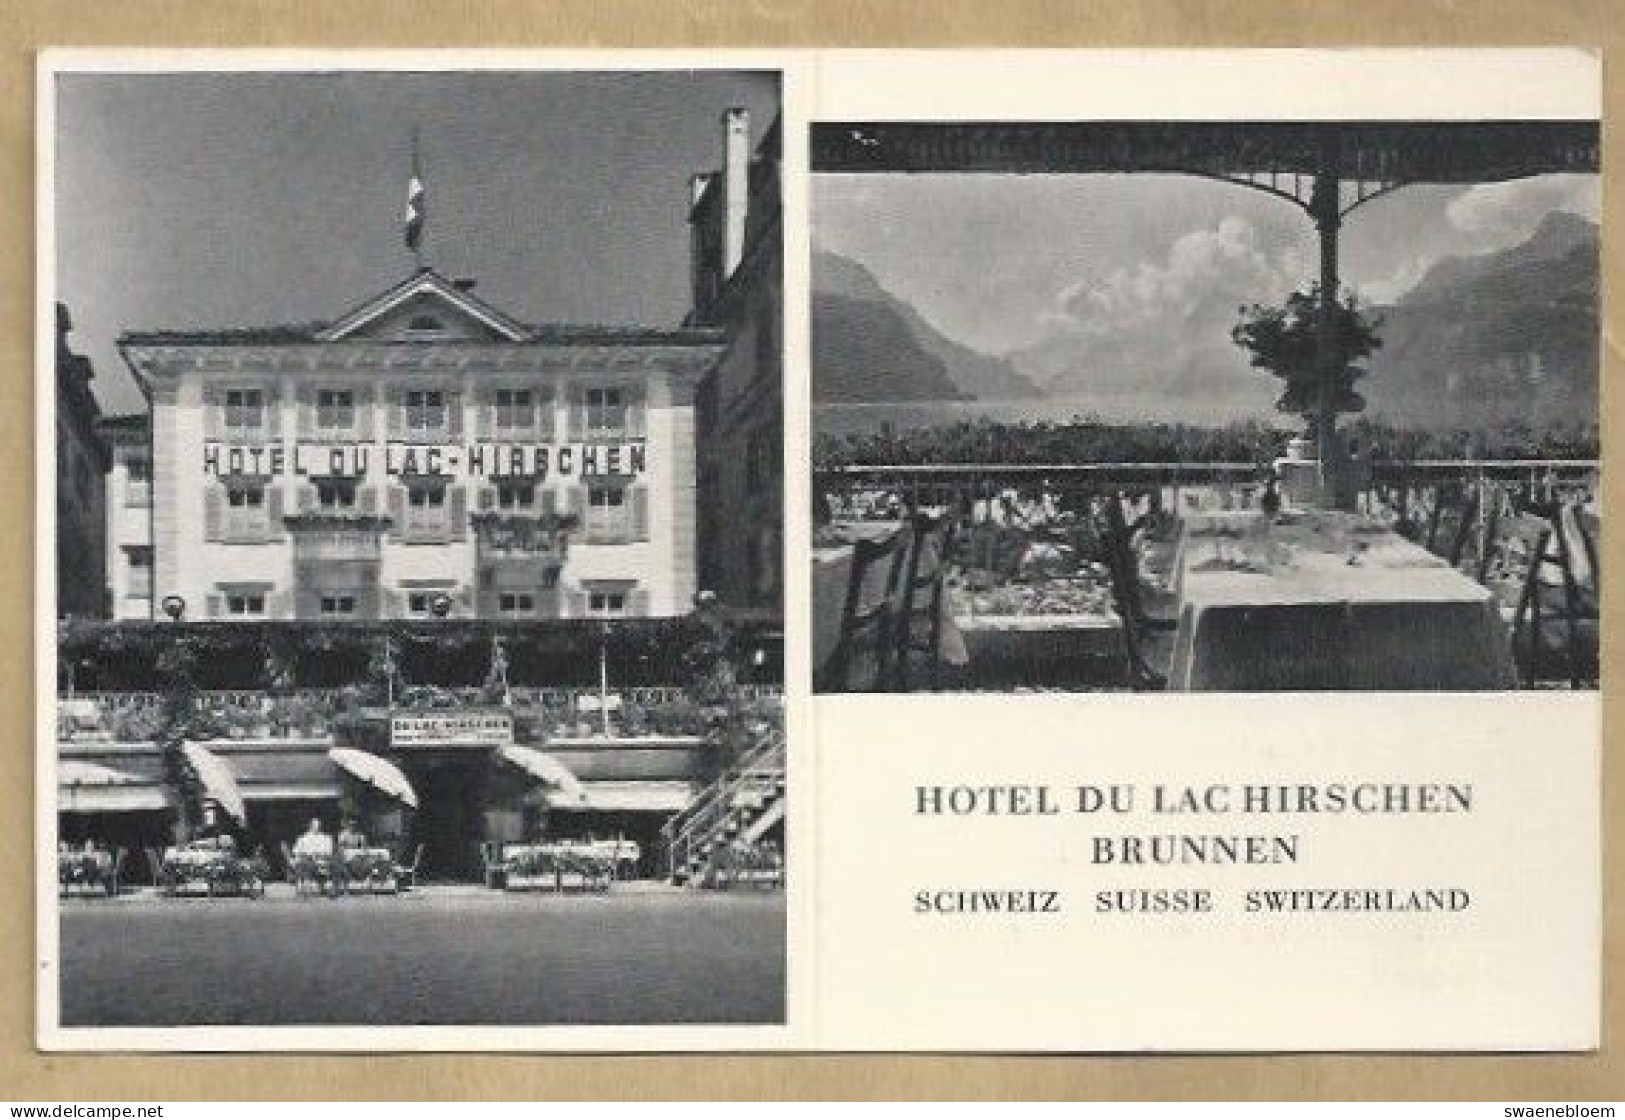 CH.- SCHWEIZ. SUISSE. SWITZERLAND. HOTEL DU LAC HIRSCHEN BRUNNEN. - Hoteles & Restaurantes